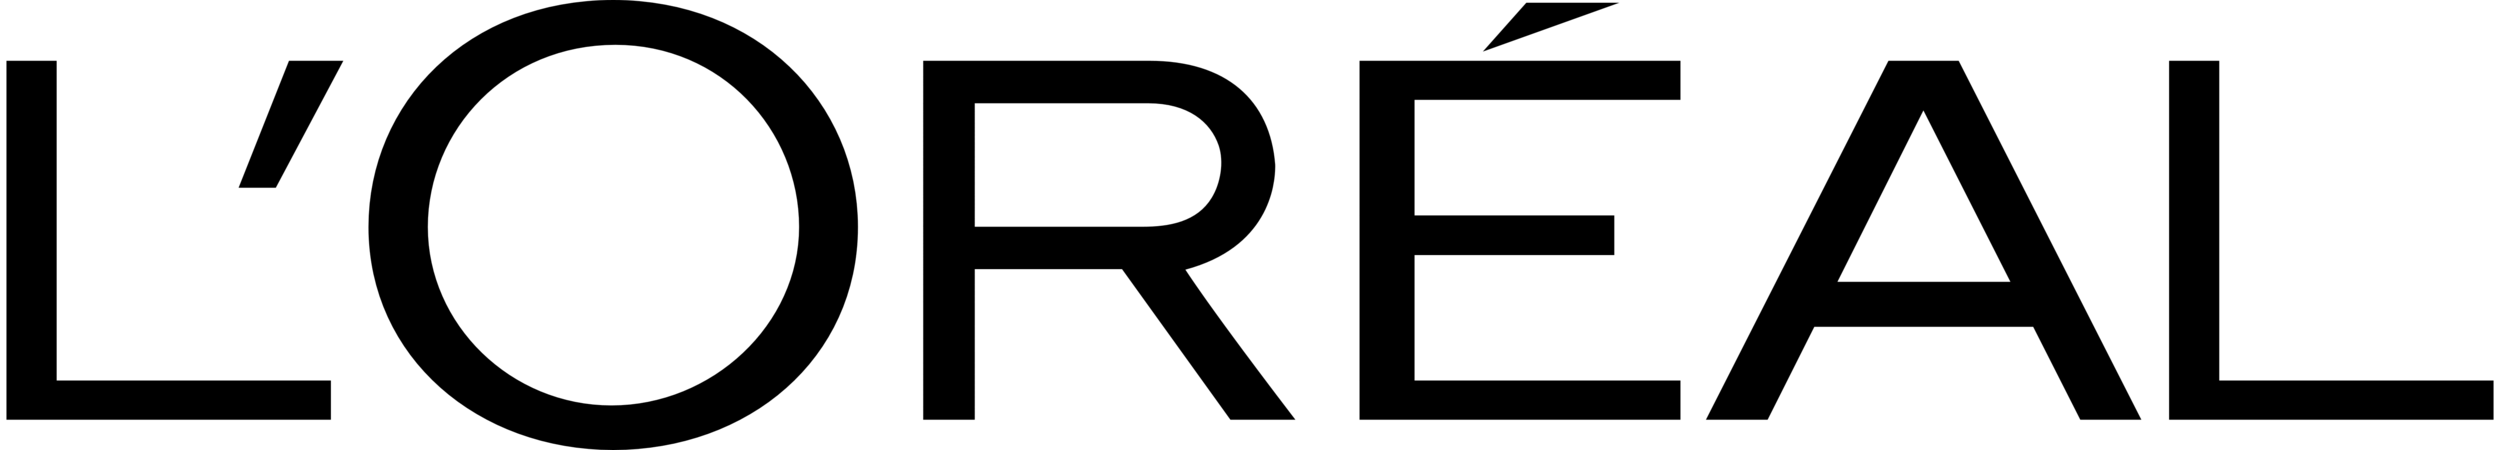 Copy of L'Oreal logo 1 (1).png